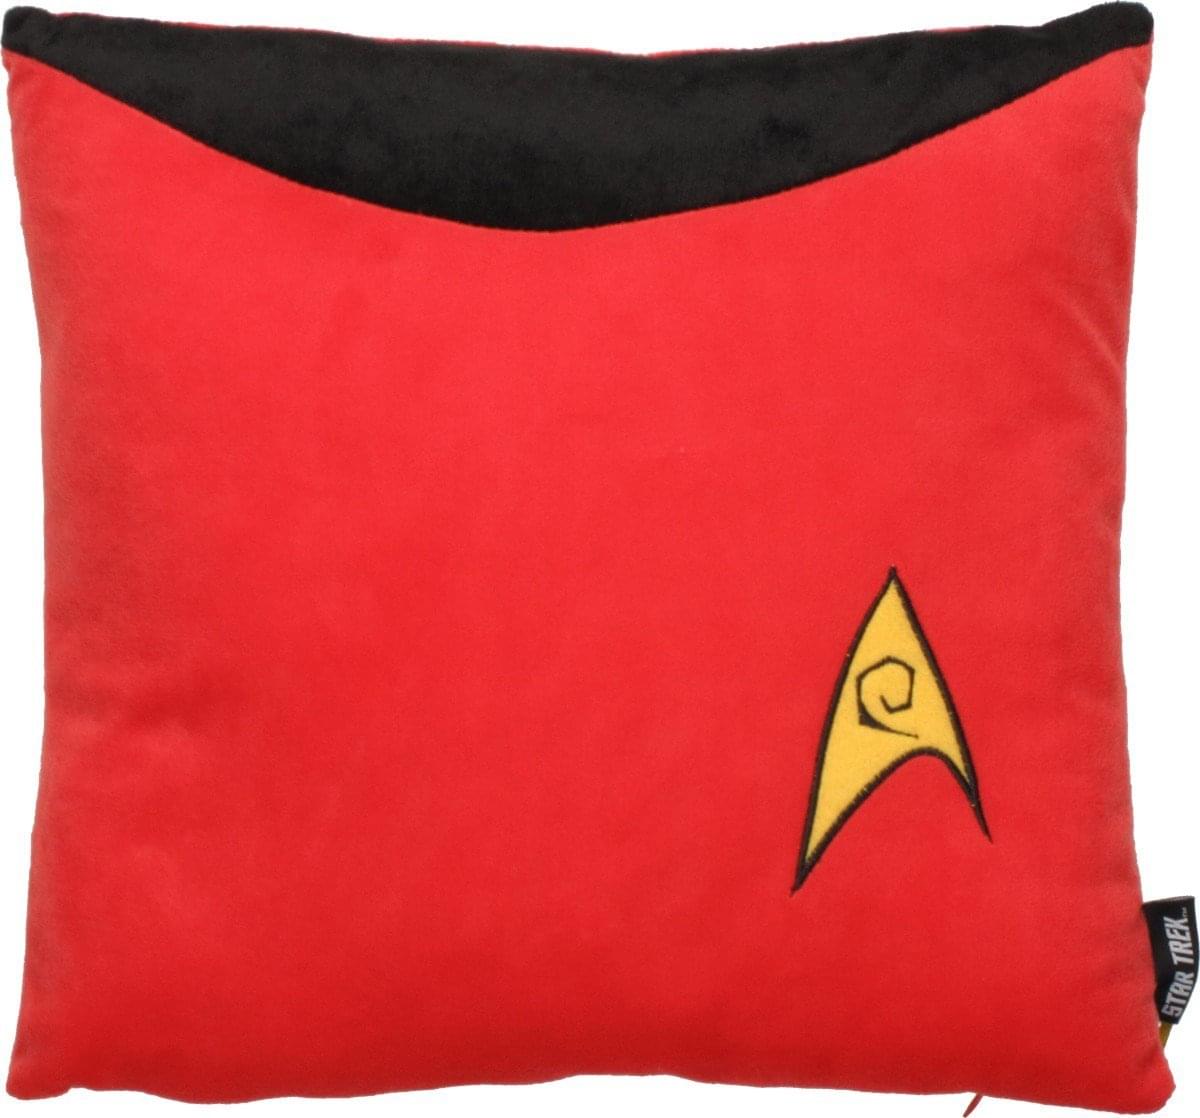 Star Trek 14" x 14" Uniform Pillow: Scotty Red